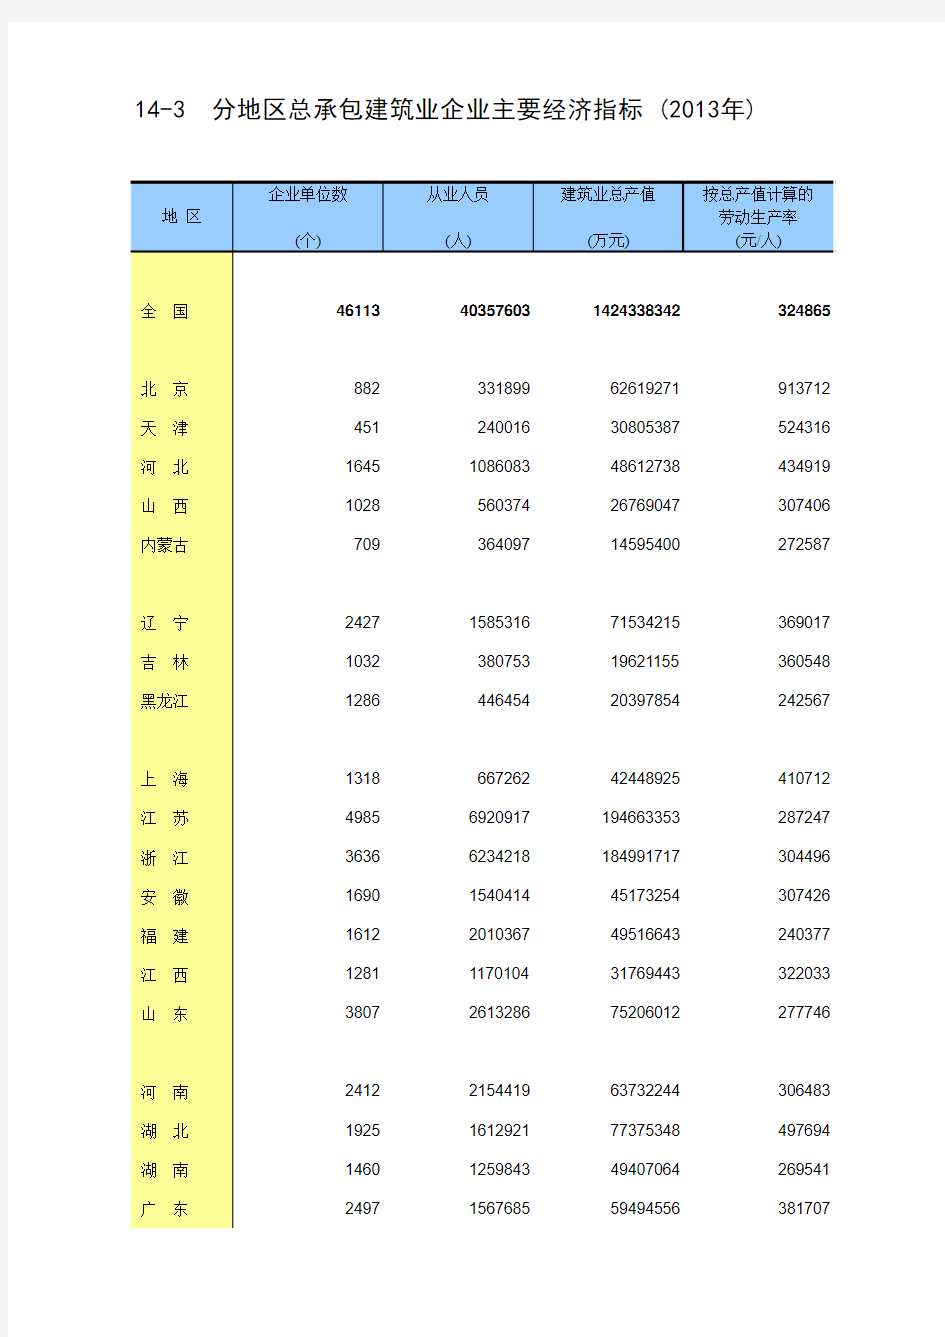 中国统计年鉴2014分地区总承包建筑业企业主要经济指标